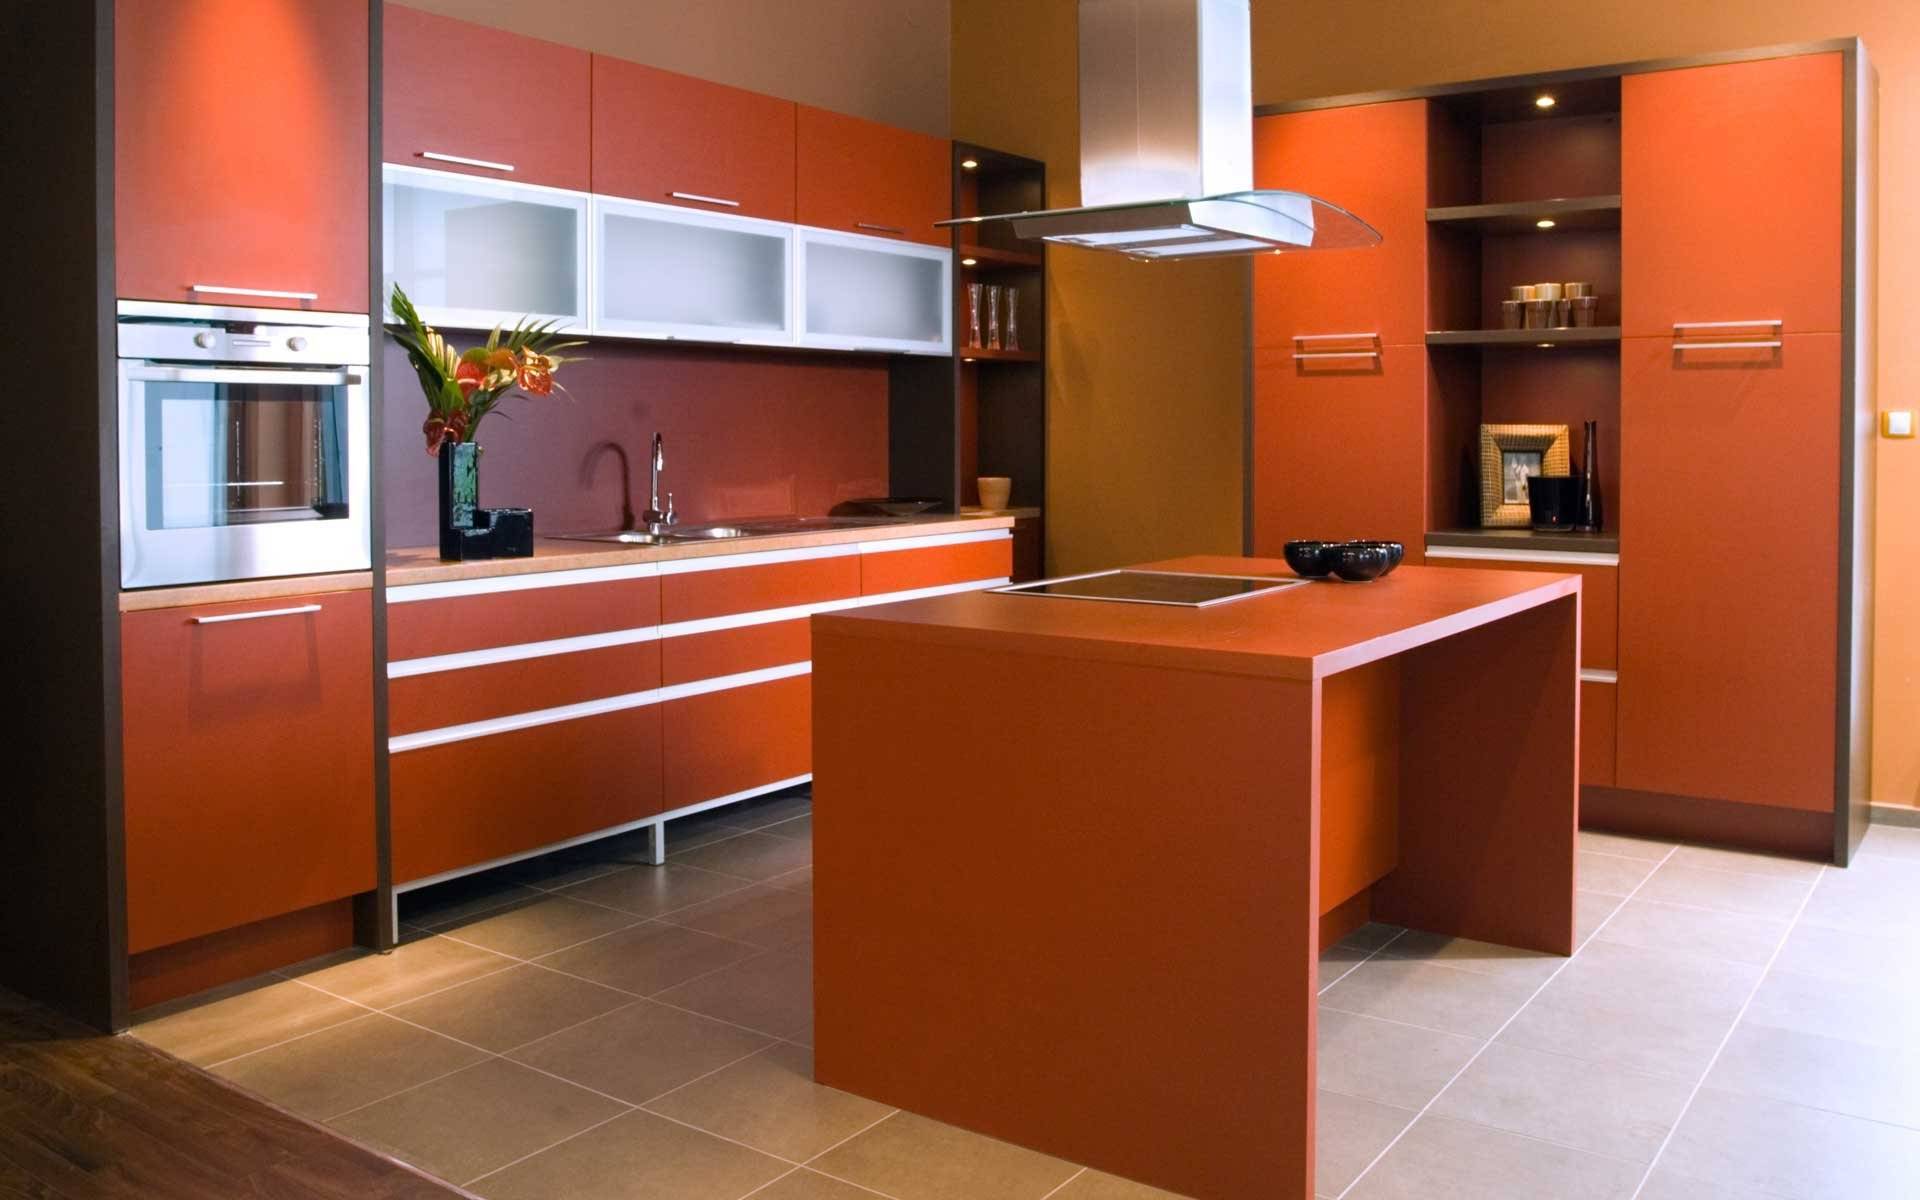 Обои оранжевого цвета: виды, дизайн и рисунки, оттенки, сочетания, фото в интерьере